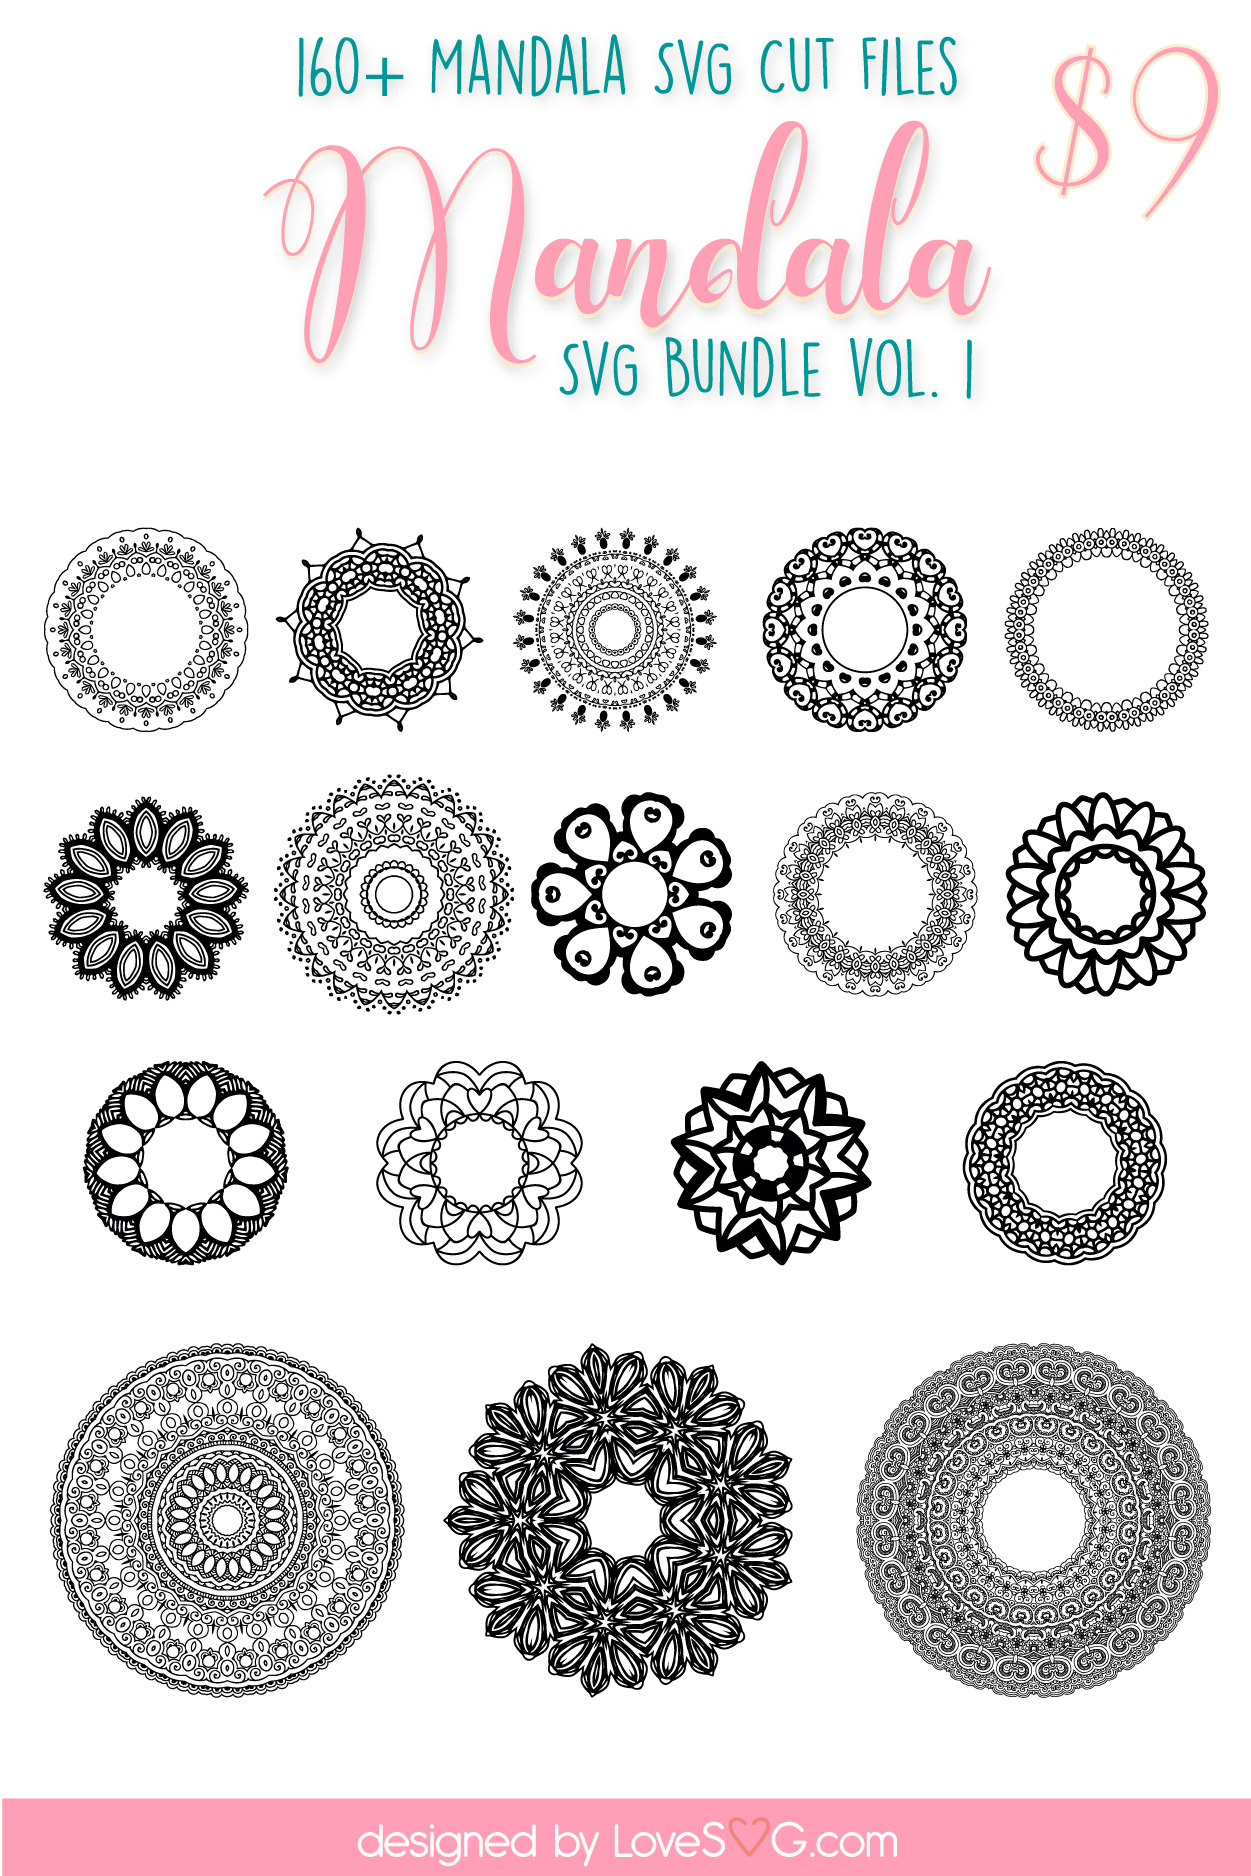 Download The Mandala SVG Bundle - Lovesvg.com